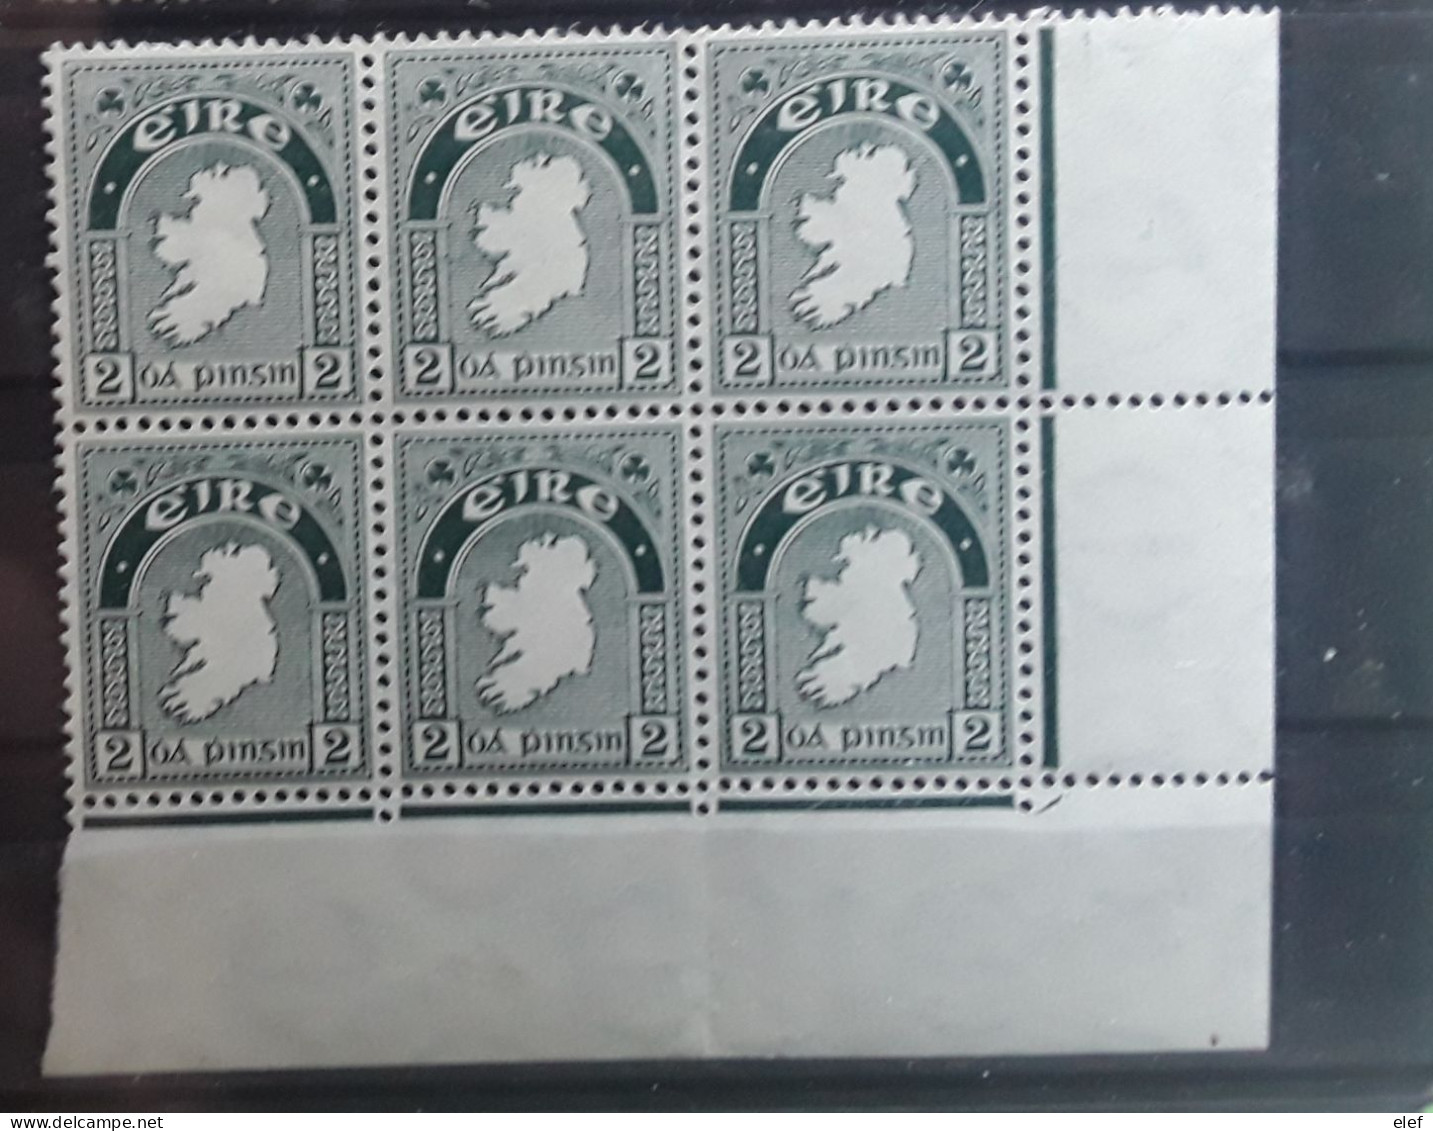 IRLANDE IRELAND 1941 , Yvert 81 , BLOC DE 6 Du 2 P Vert Gris , COIN DE FEUILLE Neuf ** MNH TB - Ungebraucht